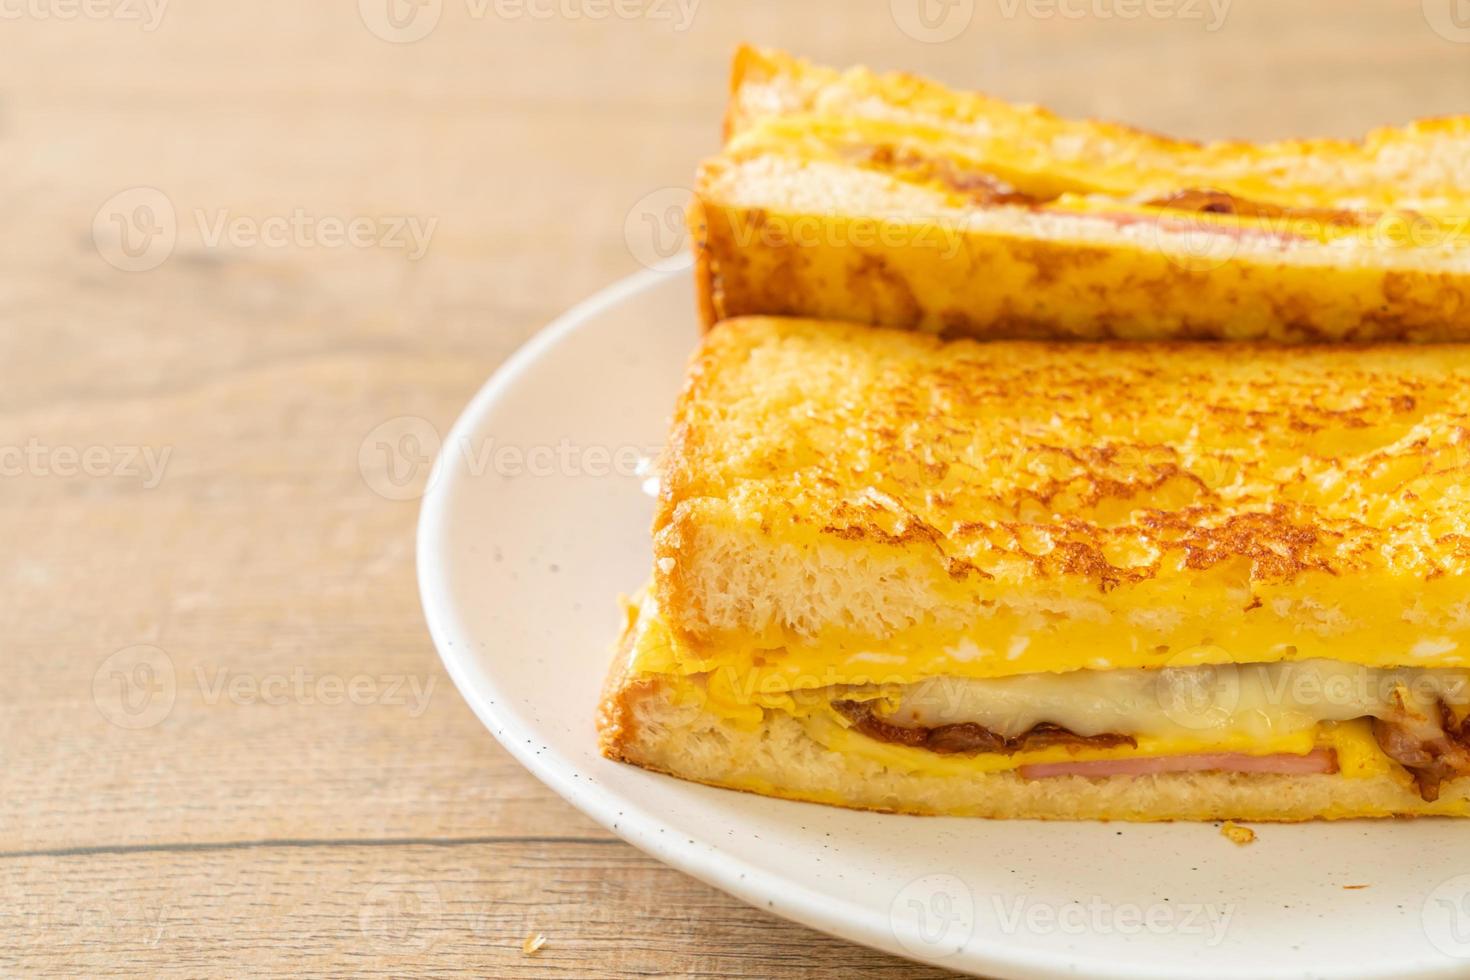 hemlagad fransk toast med skinka, bacon och ostsmörgås med ägg foto